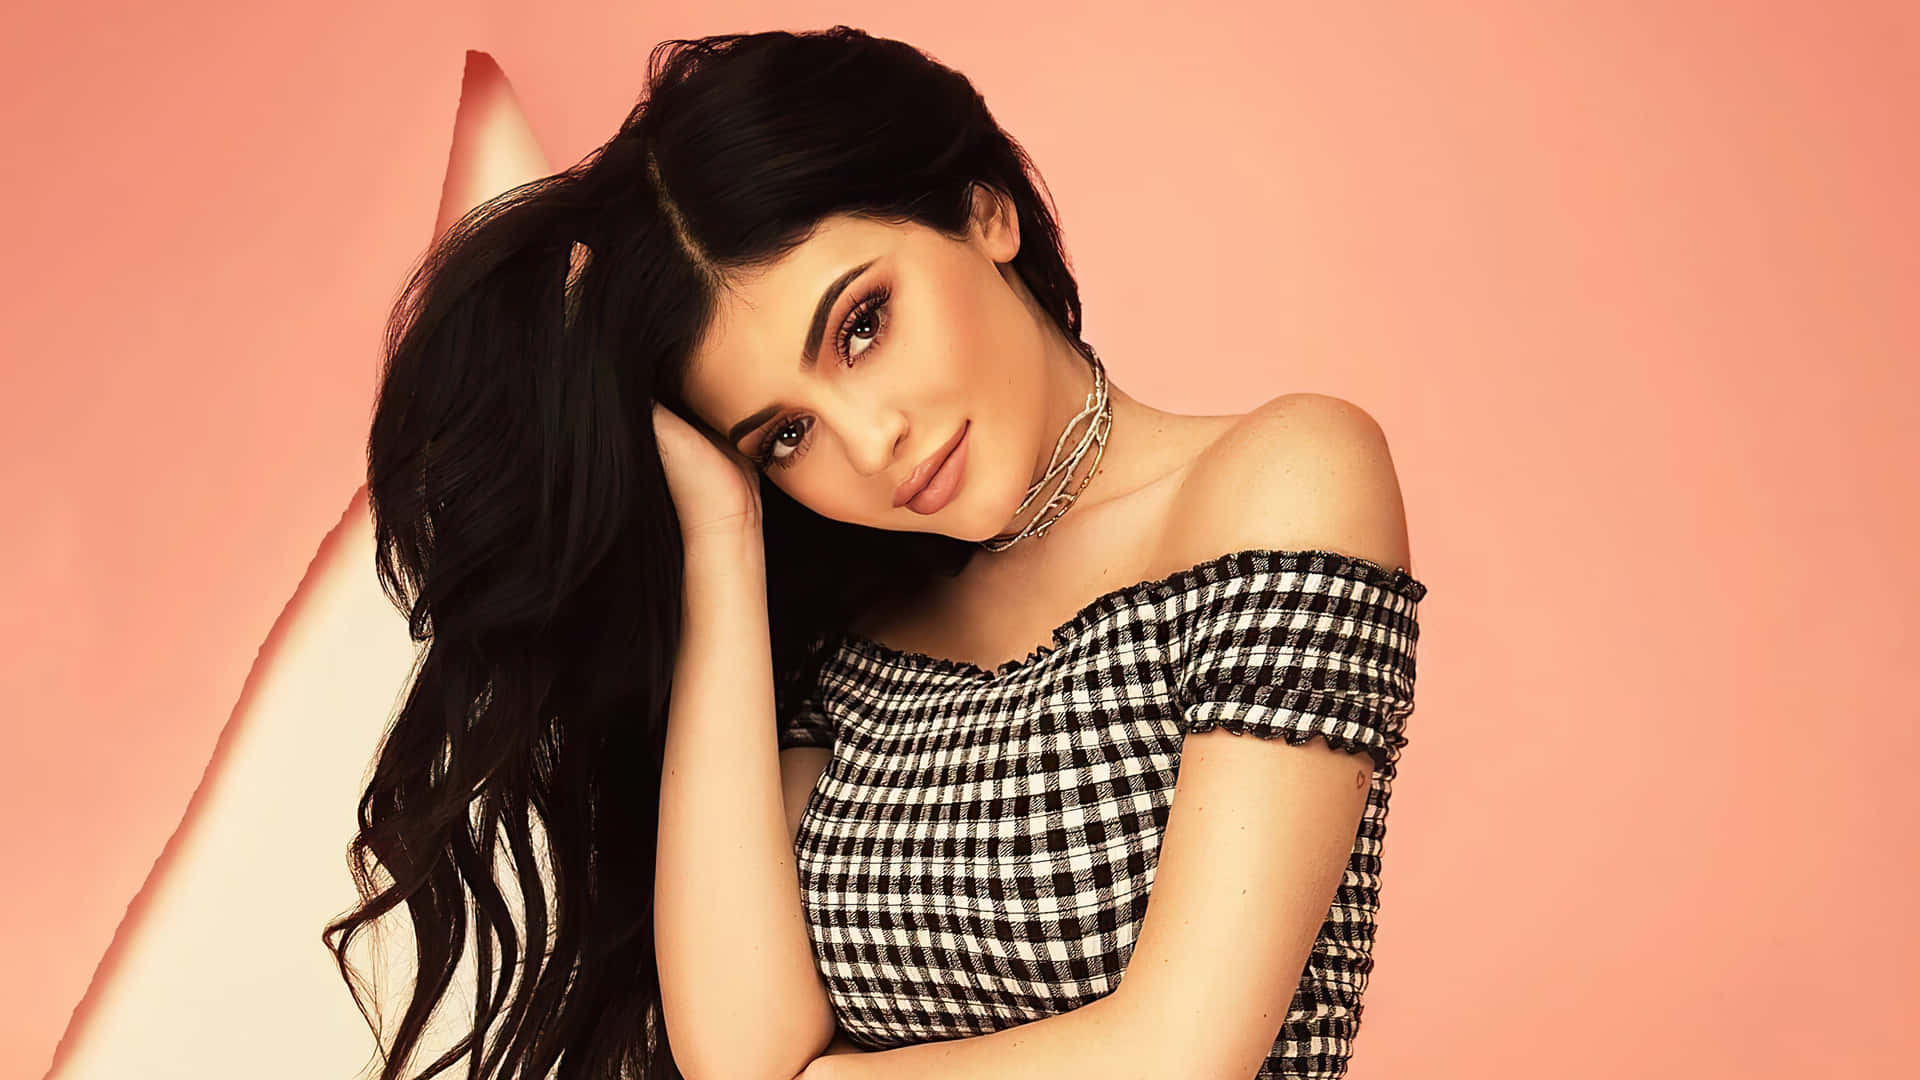 Kyliejenner Zeigt Ihre Modelseite In Diesem 4k-bild Wallpaper